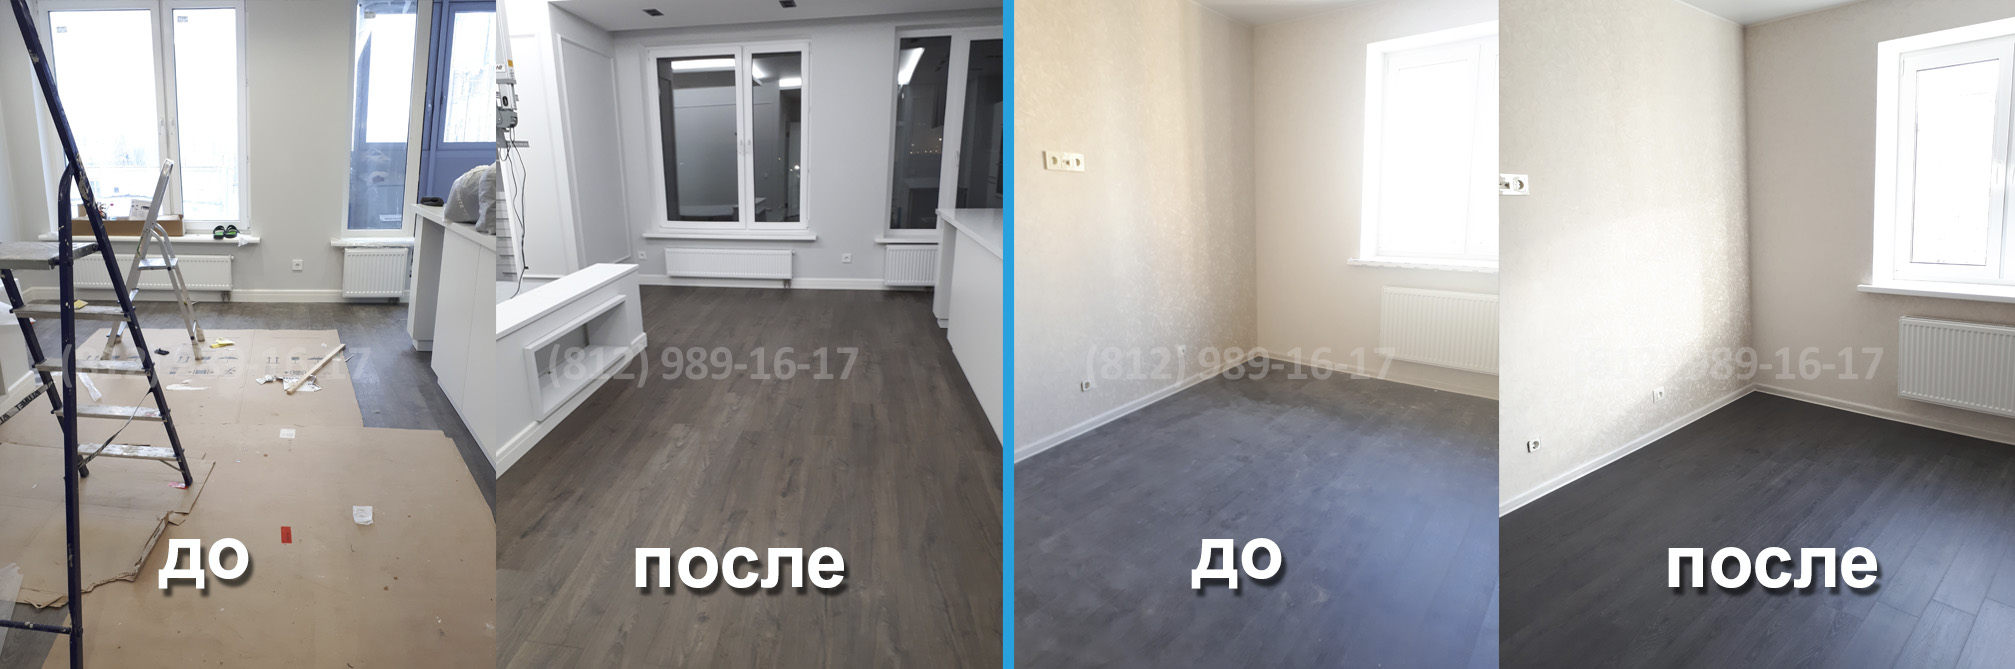 Послестроительная уборка квартир в Санкт-Петербурге